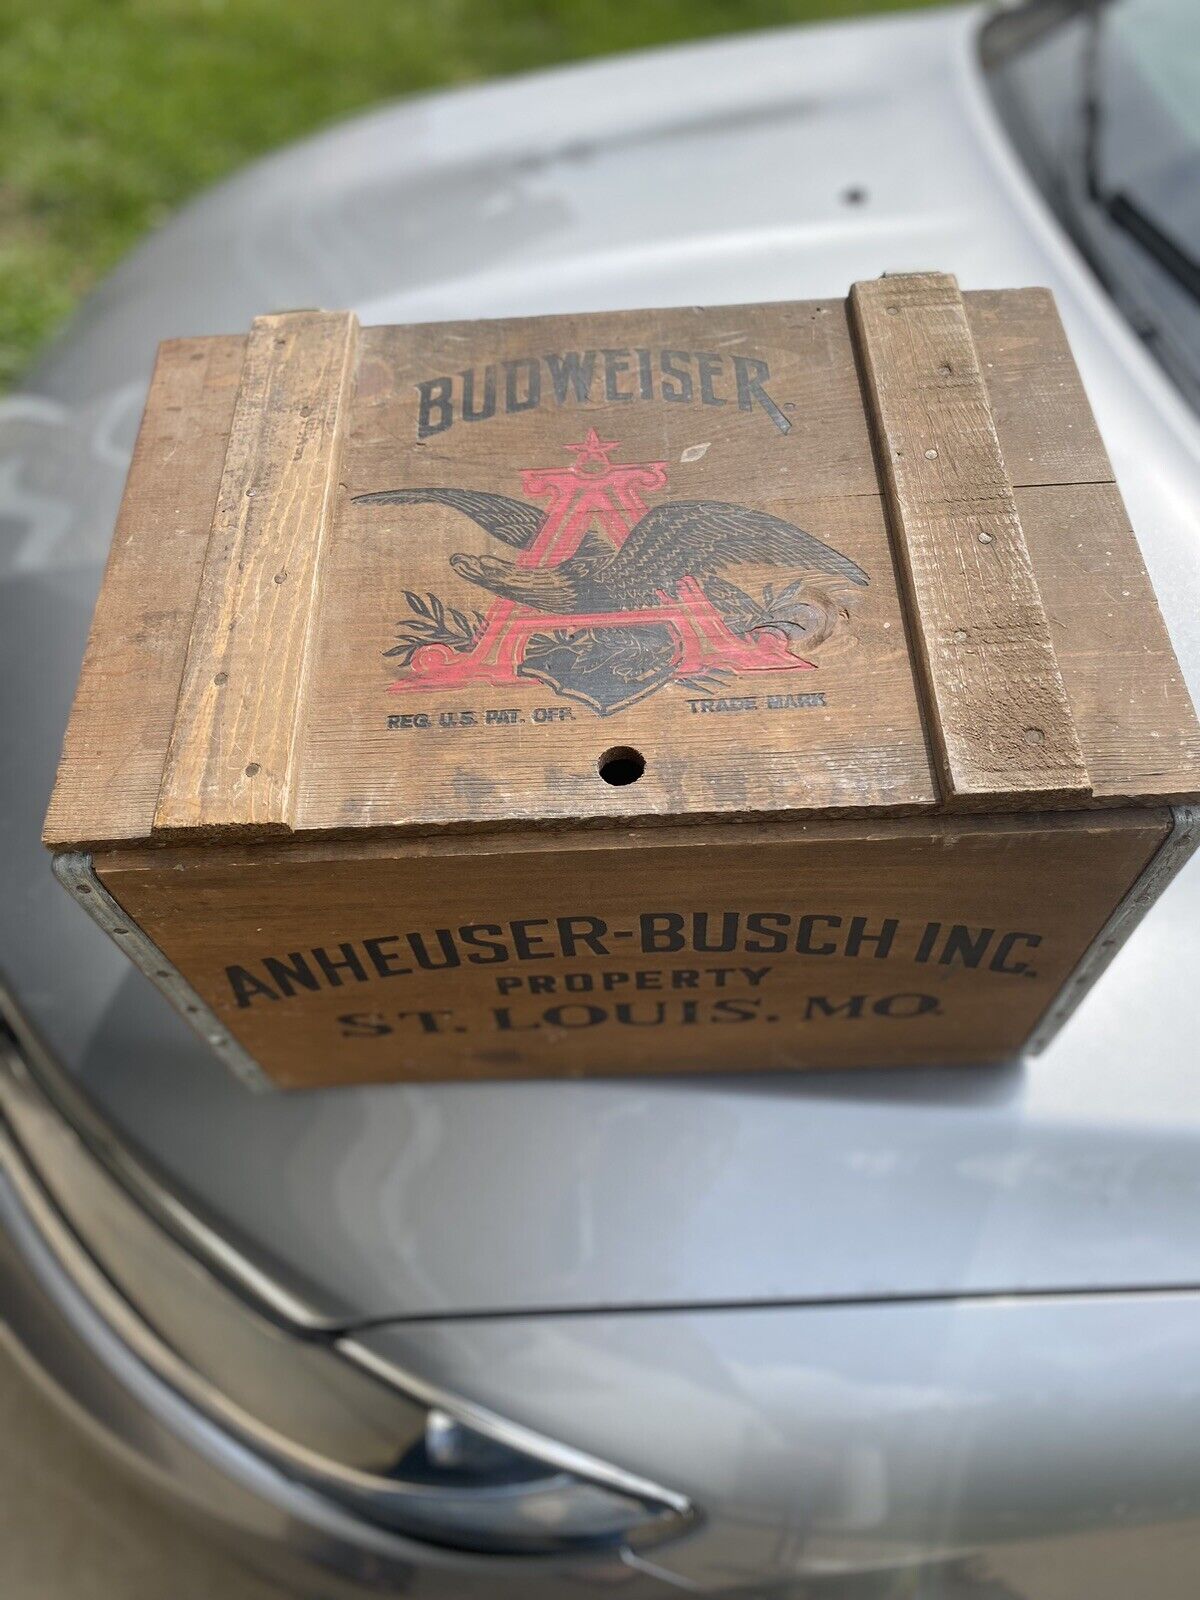 Vintage 1976 Budweiser Anheuser Busch Centennial Wooden Beer Crate Box 1876-1976